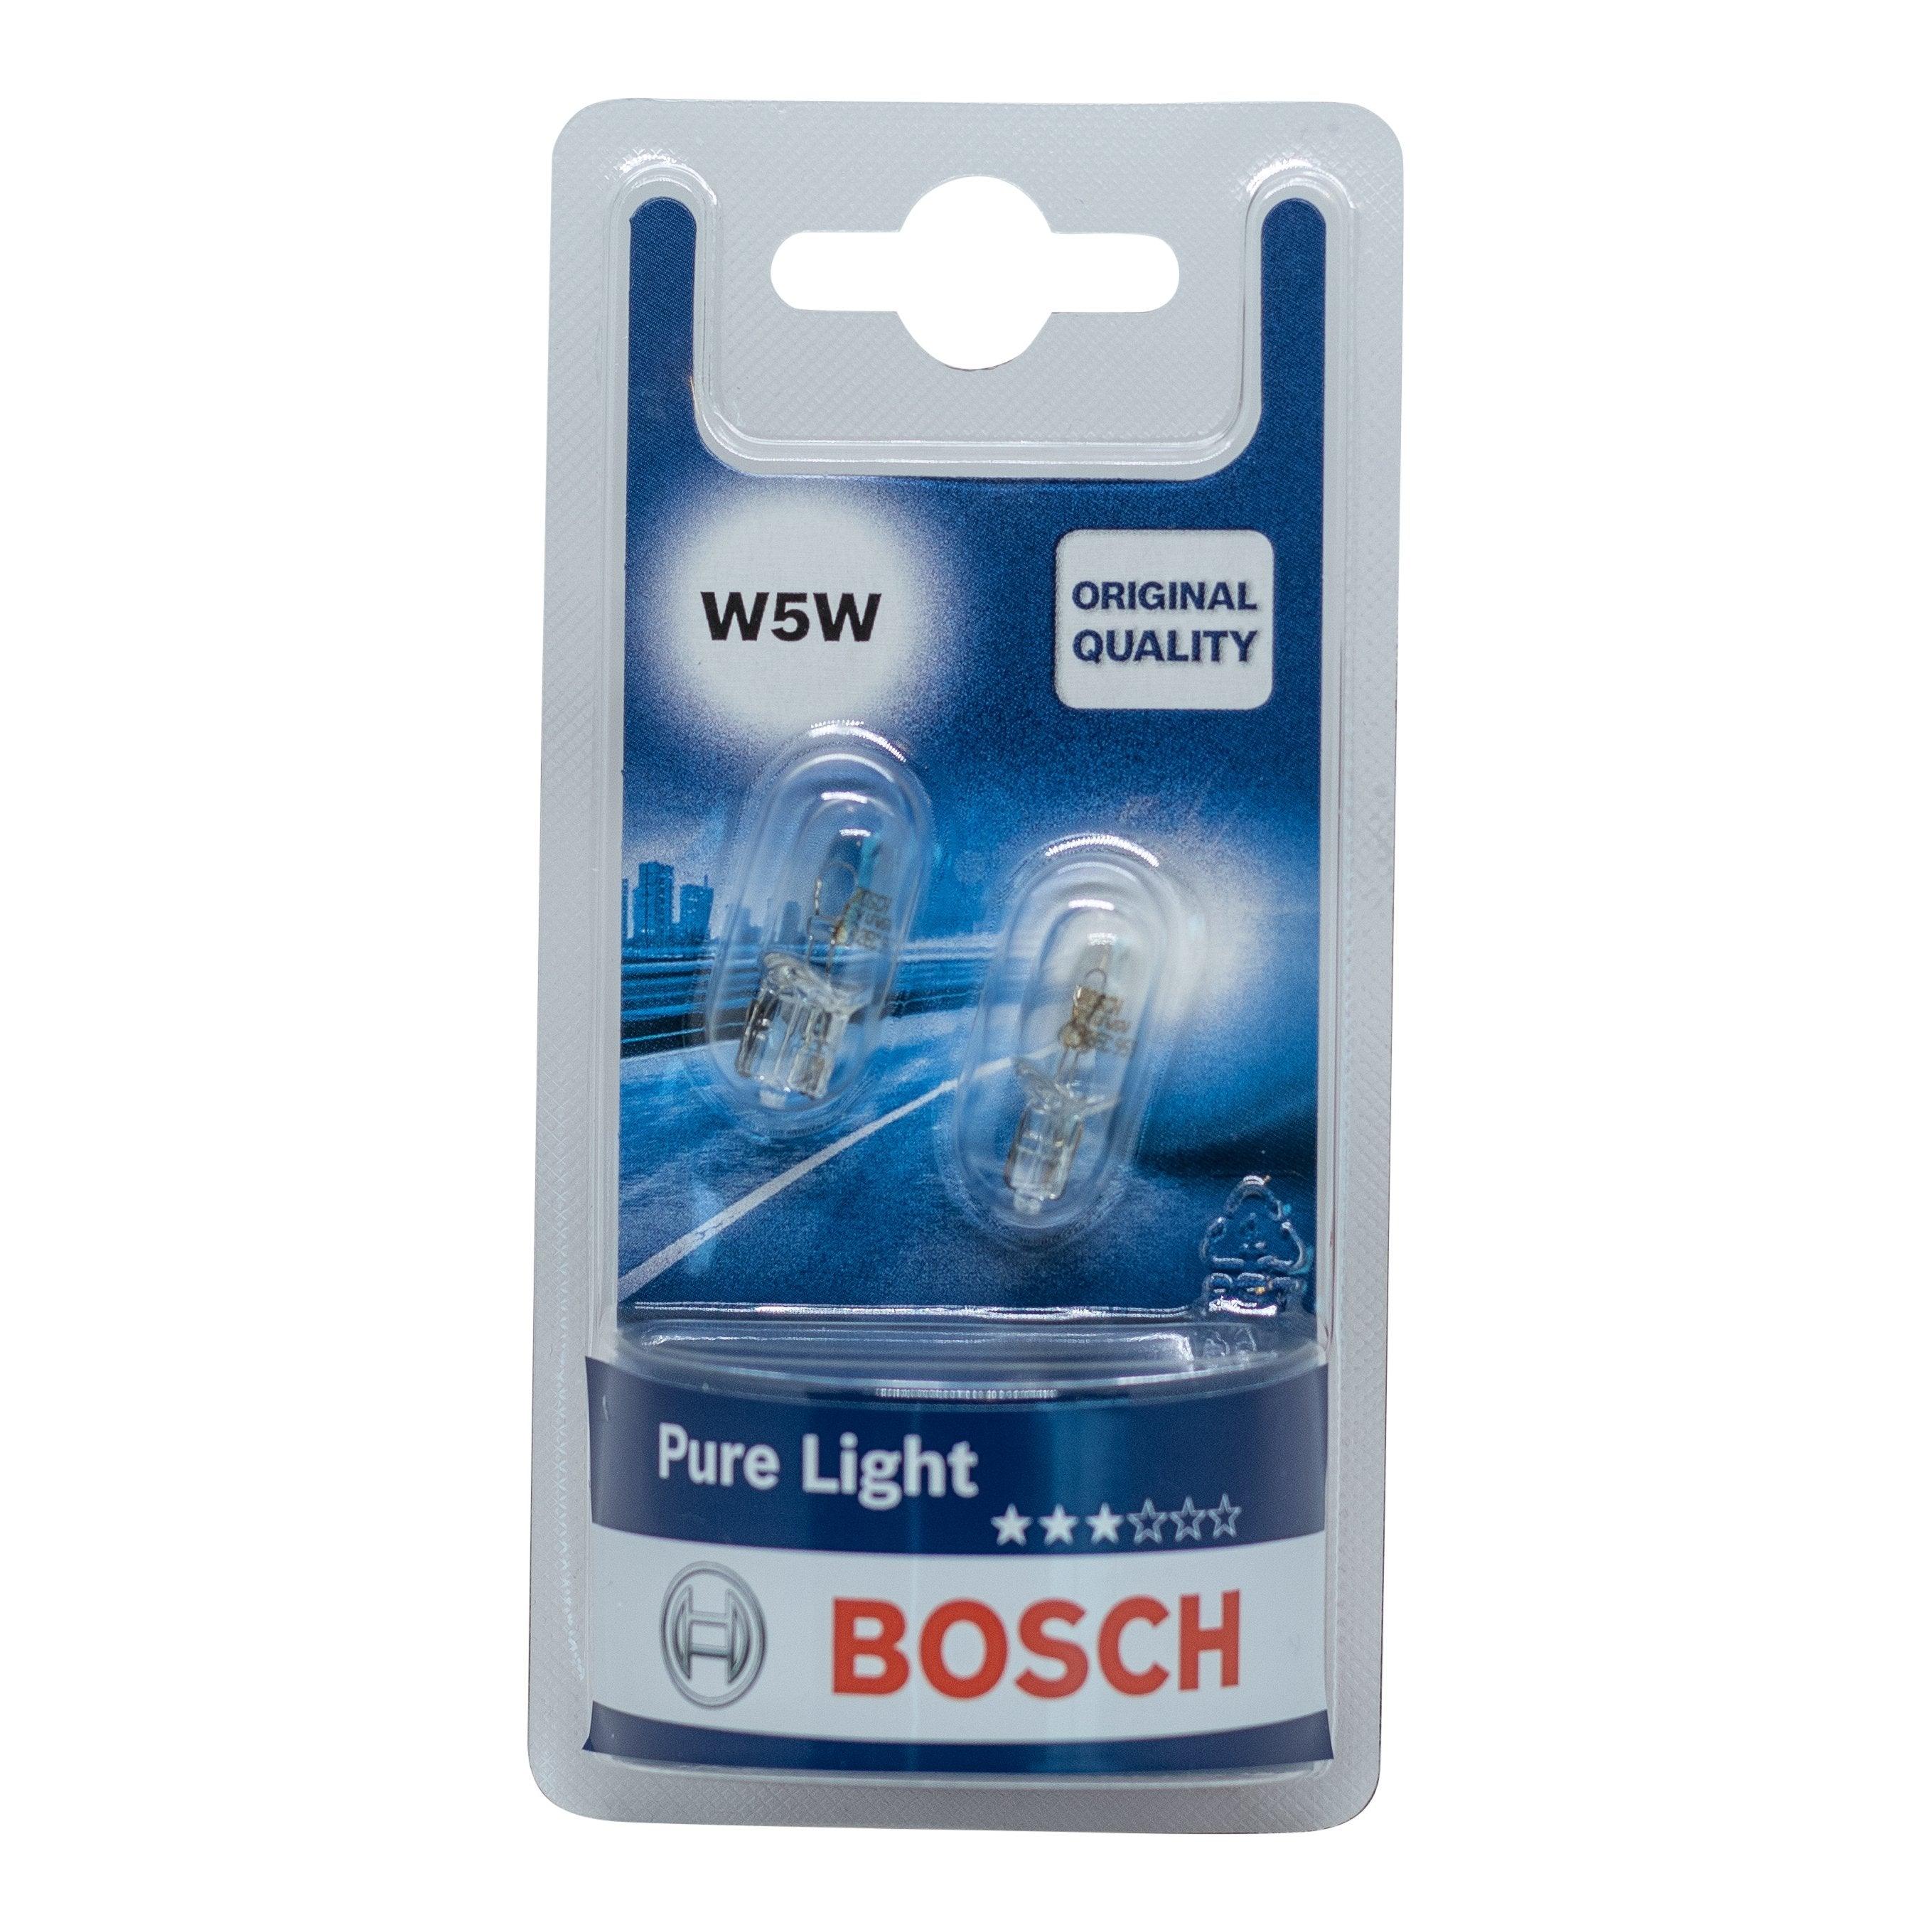 Billede af Bosch Pure Light W5W hos XpertCleaning.dk